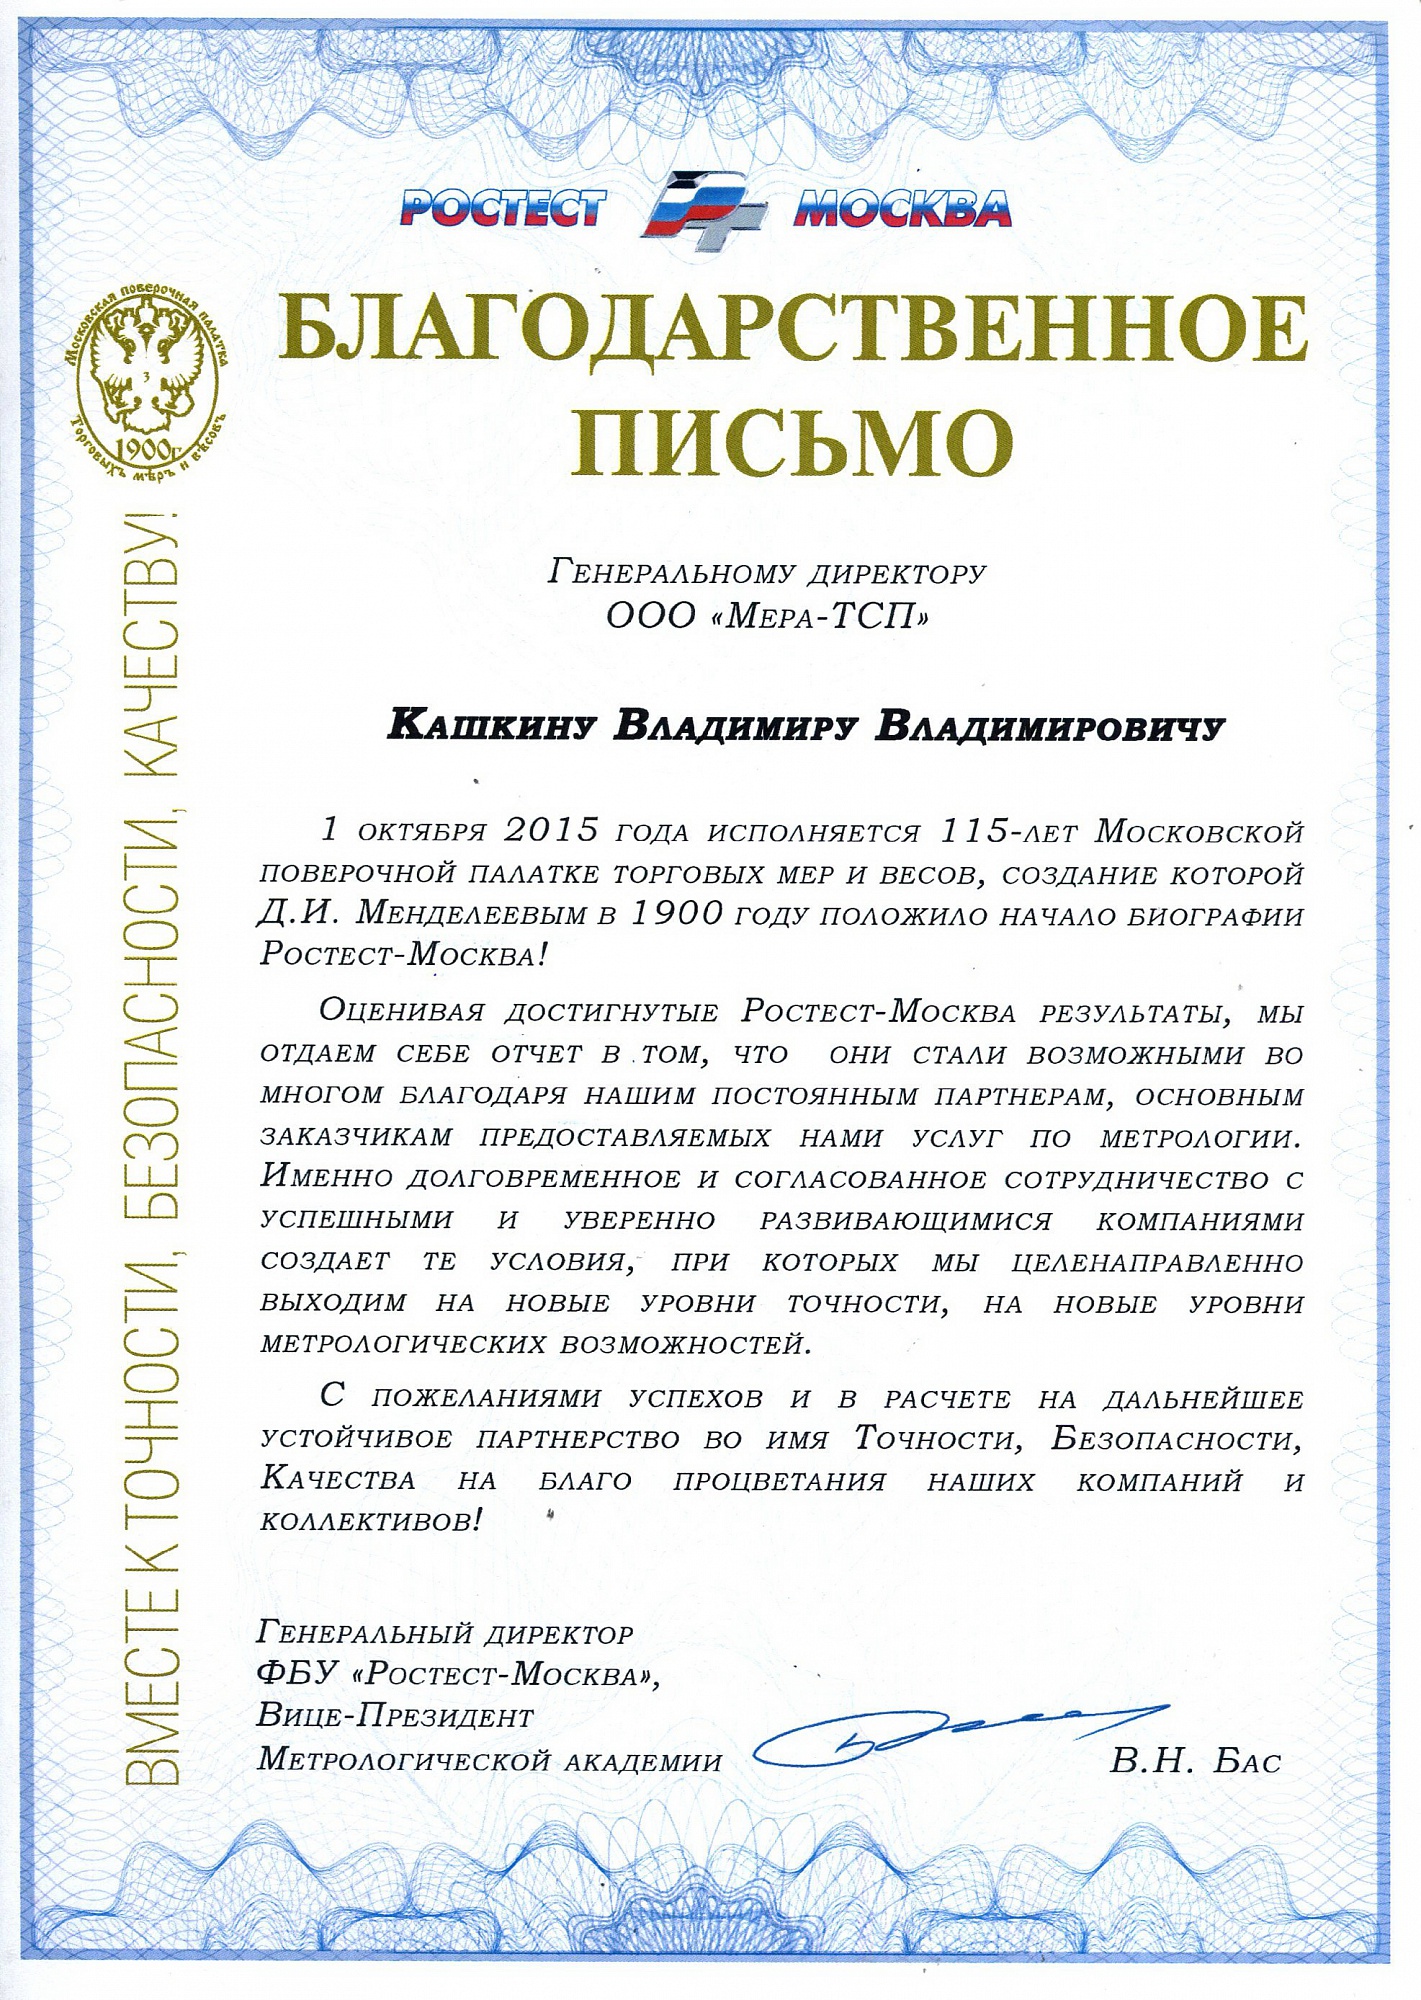 Благодарственное письмо от ФБУ "Ростест-Москва"